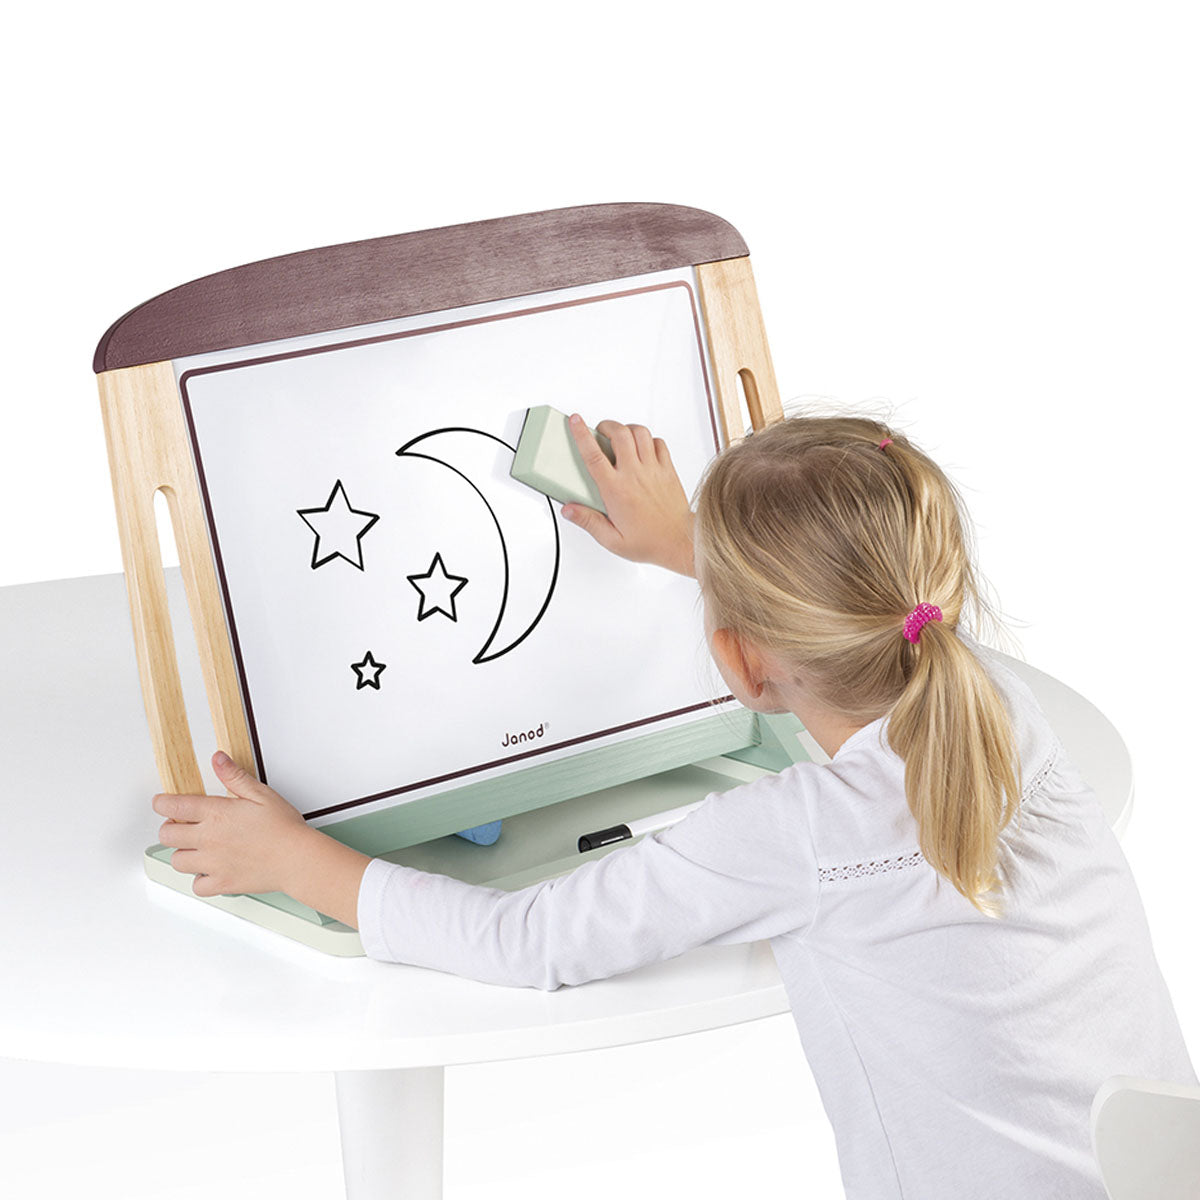 Dit leuke tafelmodel schoolbord in bordeaux/mintgroen is niet alleen leuk, maar ook handig speelgoed voor je kleintje. Dit mooie schoolbord kan namelijk overal gebruikt worden en blijft stevig staan op een vlakke ondergrond. VanZus